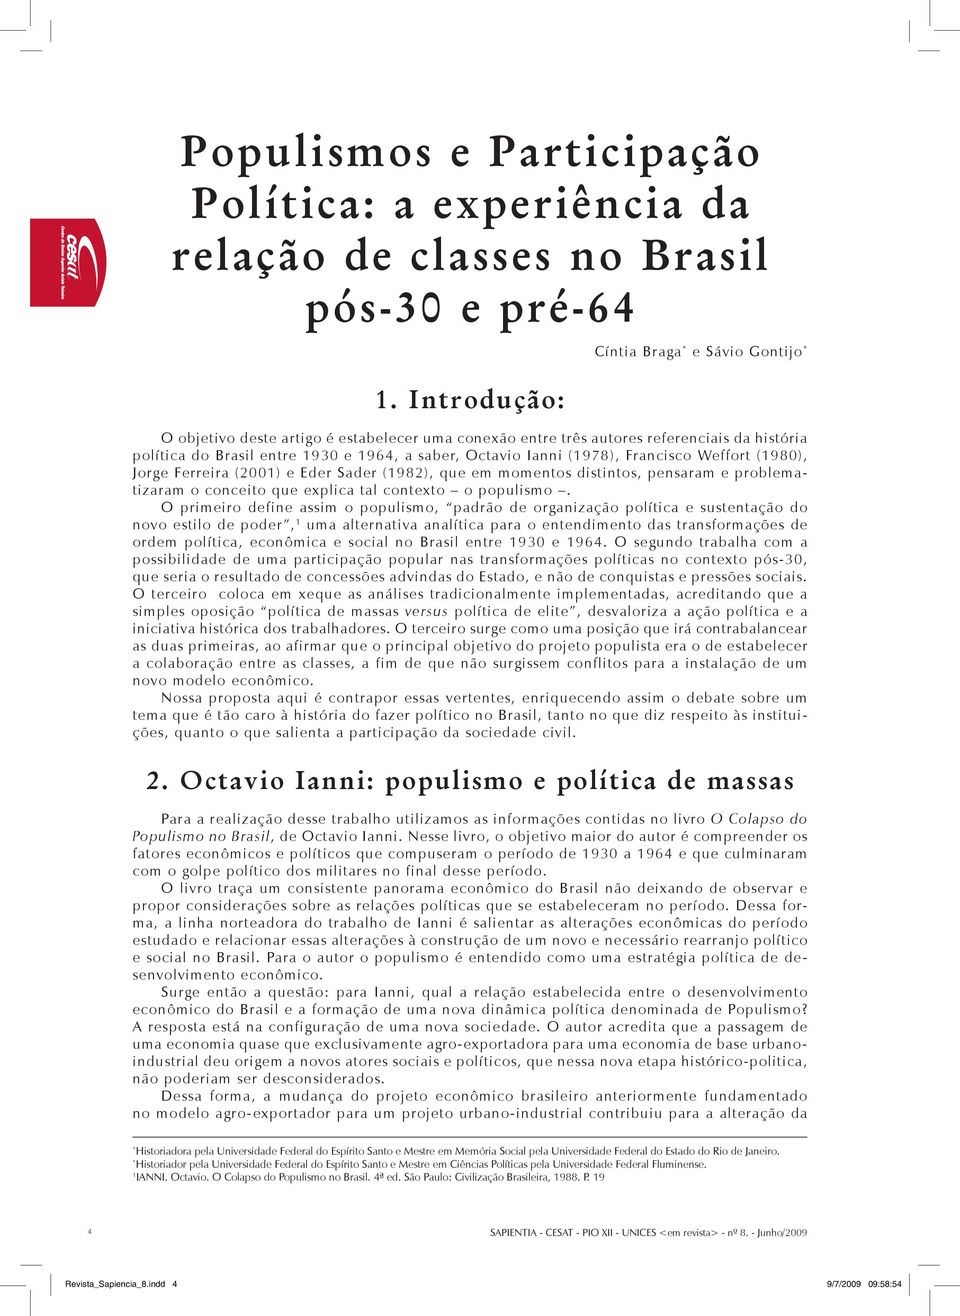 (1978), Francisco Weffort (1980), Jorge Ferreira (2001) e Eder Sader (1982), que em momentos distintos, pensaram e problematizaram o conceito que explica tal contexto o populismo.